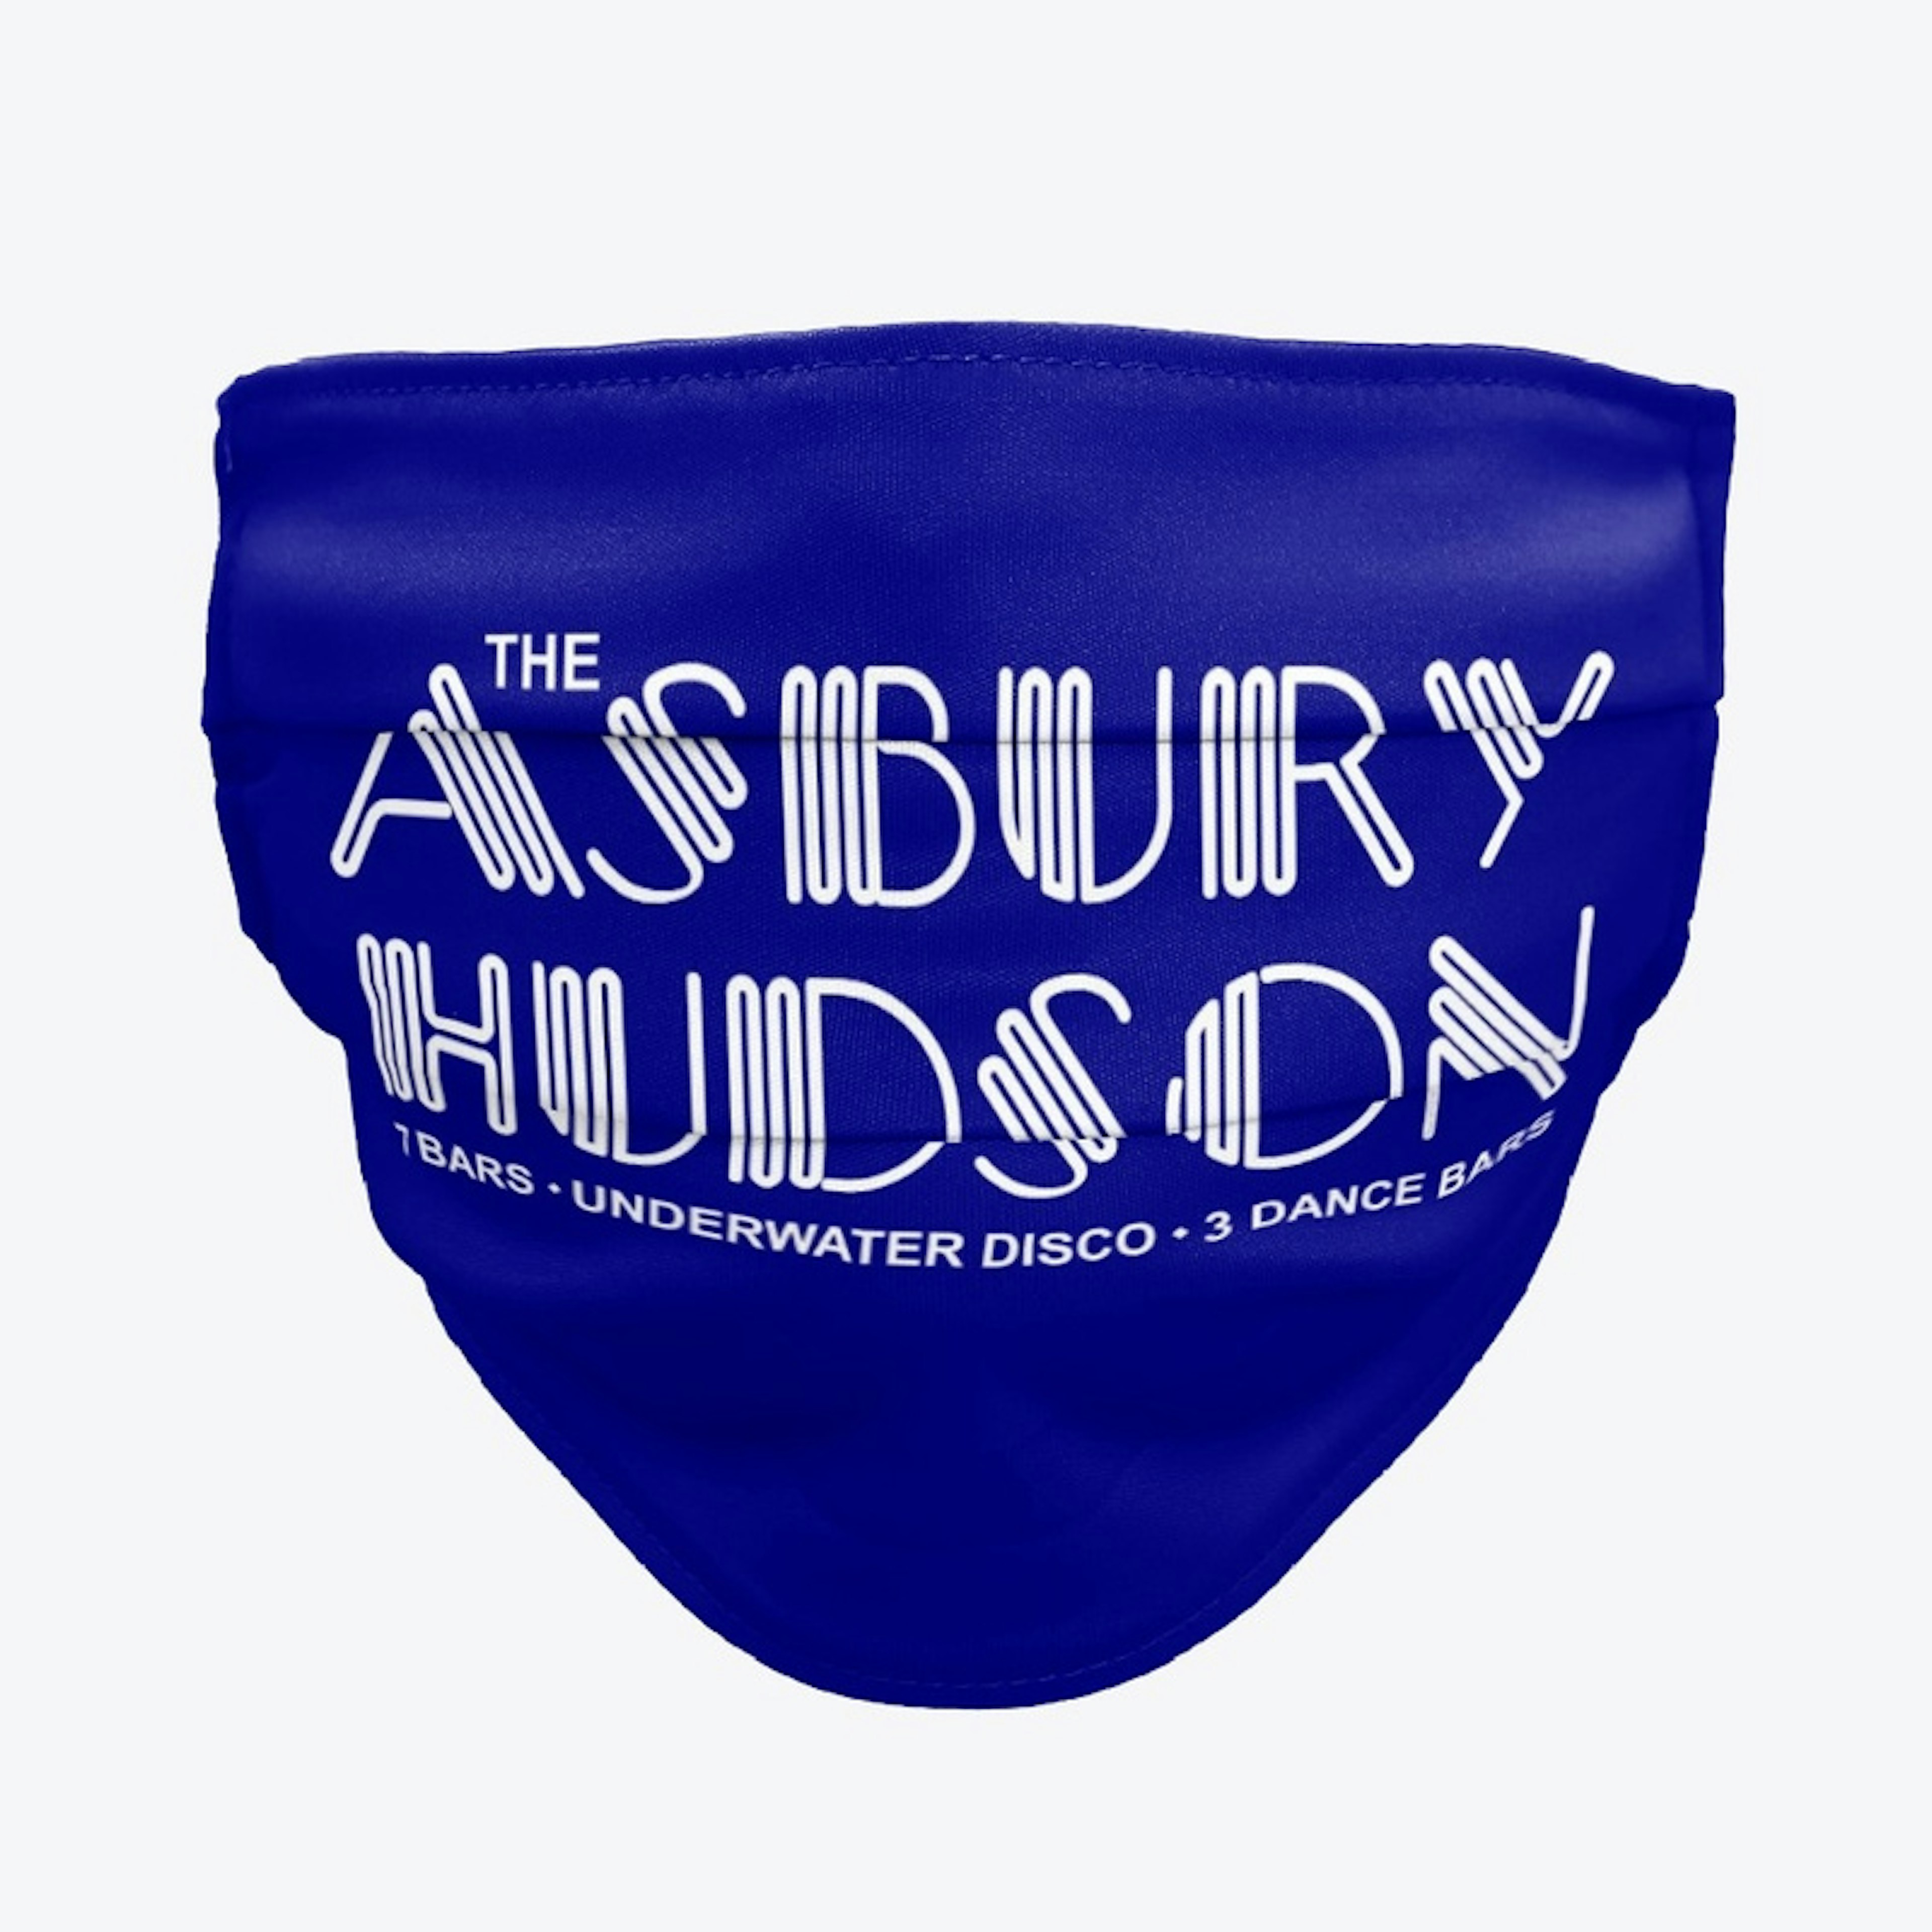 AsburyHudson